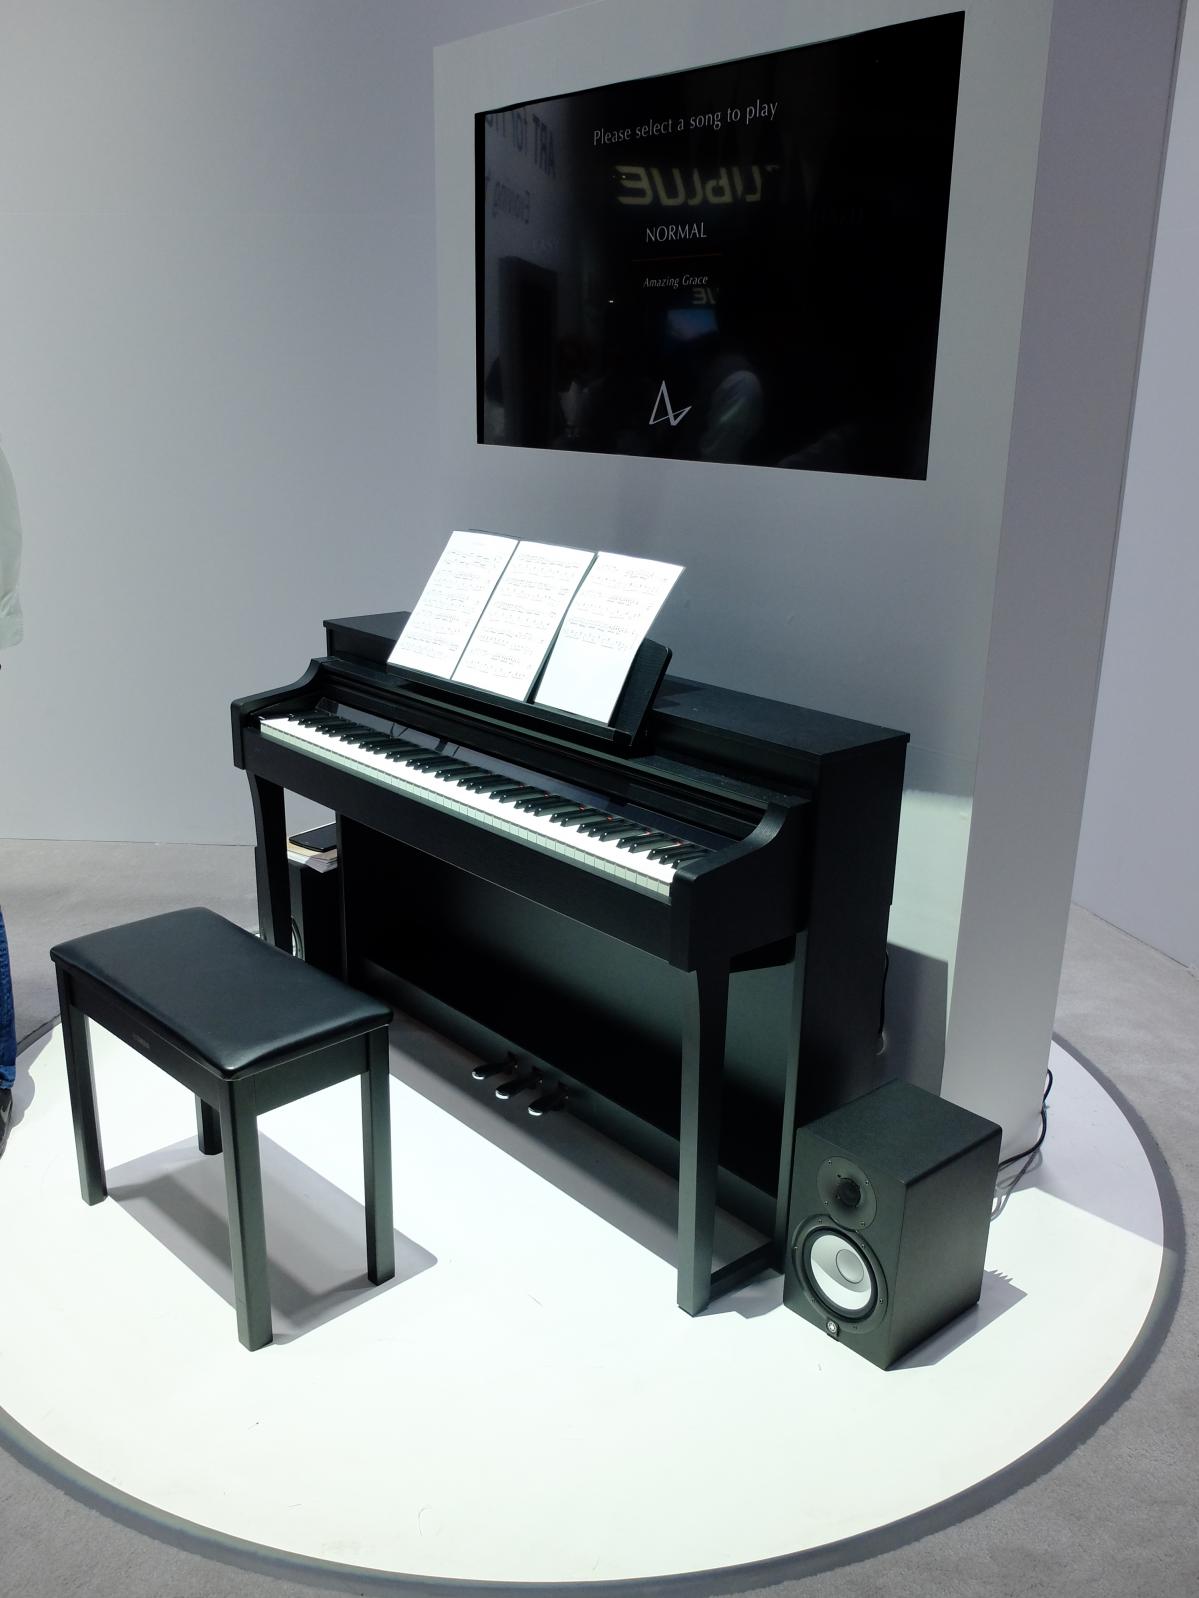 ヤマハのAI技術搭載ピアノにみるトヨタ・ガーディアン技術との共通性【CES2019レポート】